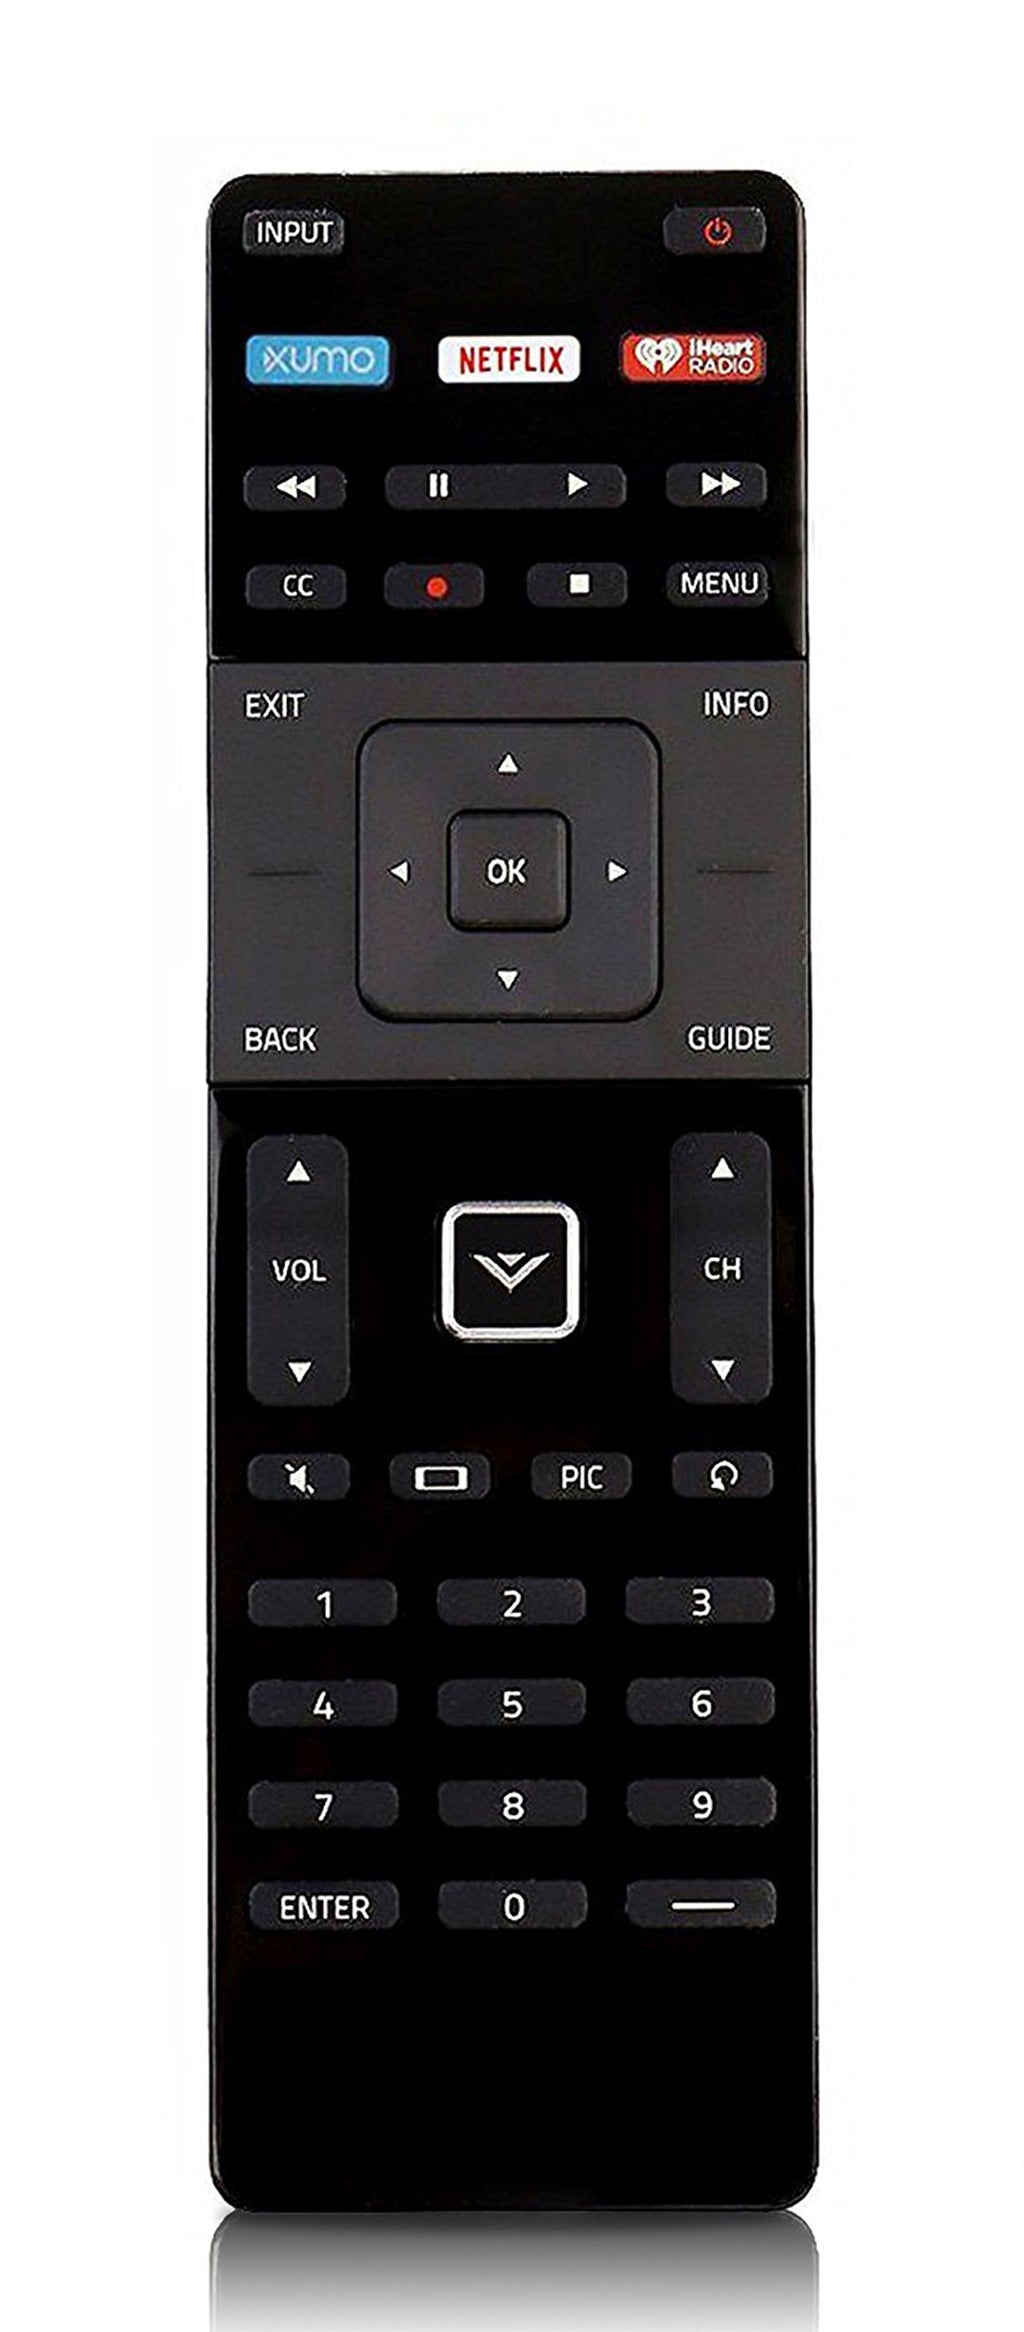 New XRT122 XUMO Remote Control fit for Vizio LED LCD Smart Internet TV D24D1 D24-D1 D24HE1 D24H-E1 D28HD1 D28H-D1 D32D1 D32-D1 D32FE1 D32F-E1 D32HD1 D32H-D1 D32XD1 D32X-D1 D39FE1 D39F-E1 D39HD0